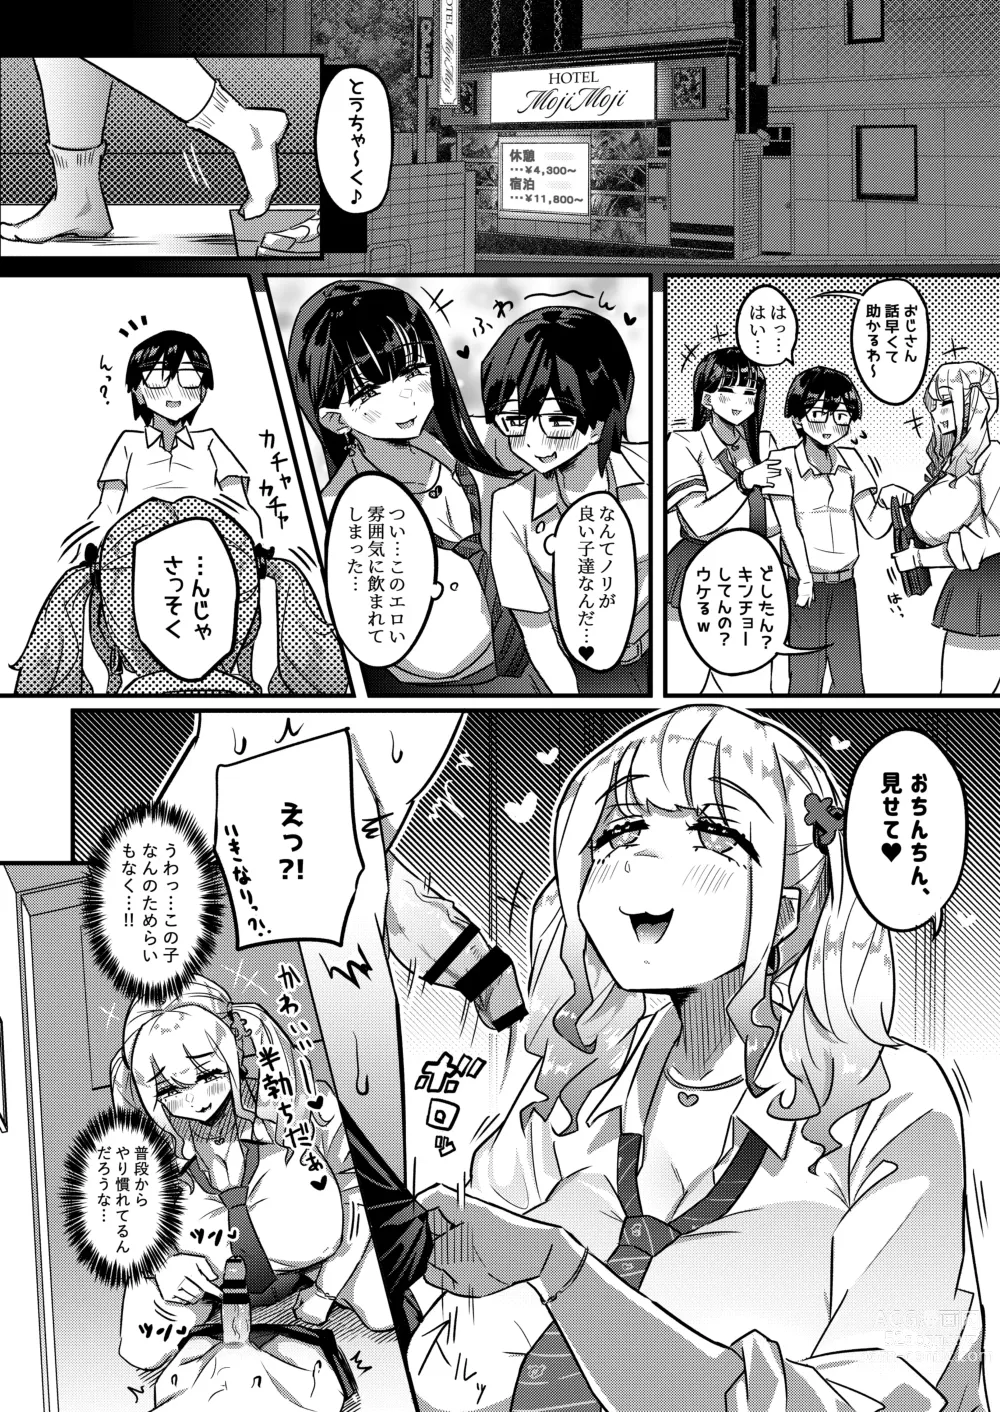 Page 5 of doujinshi Muchimuchi Warikiri JK